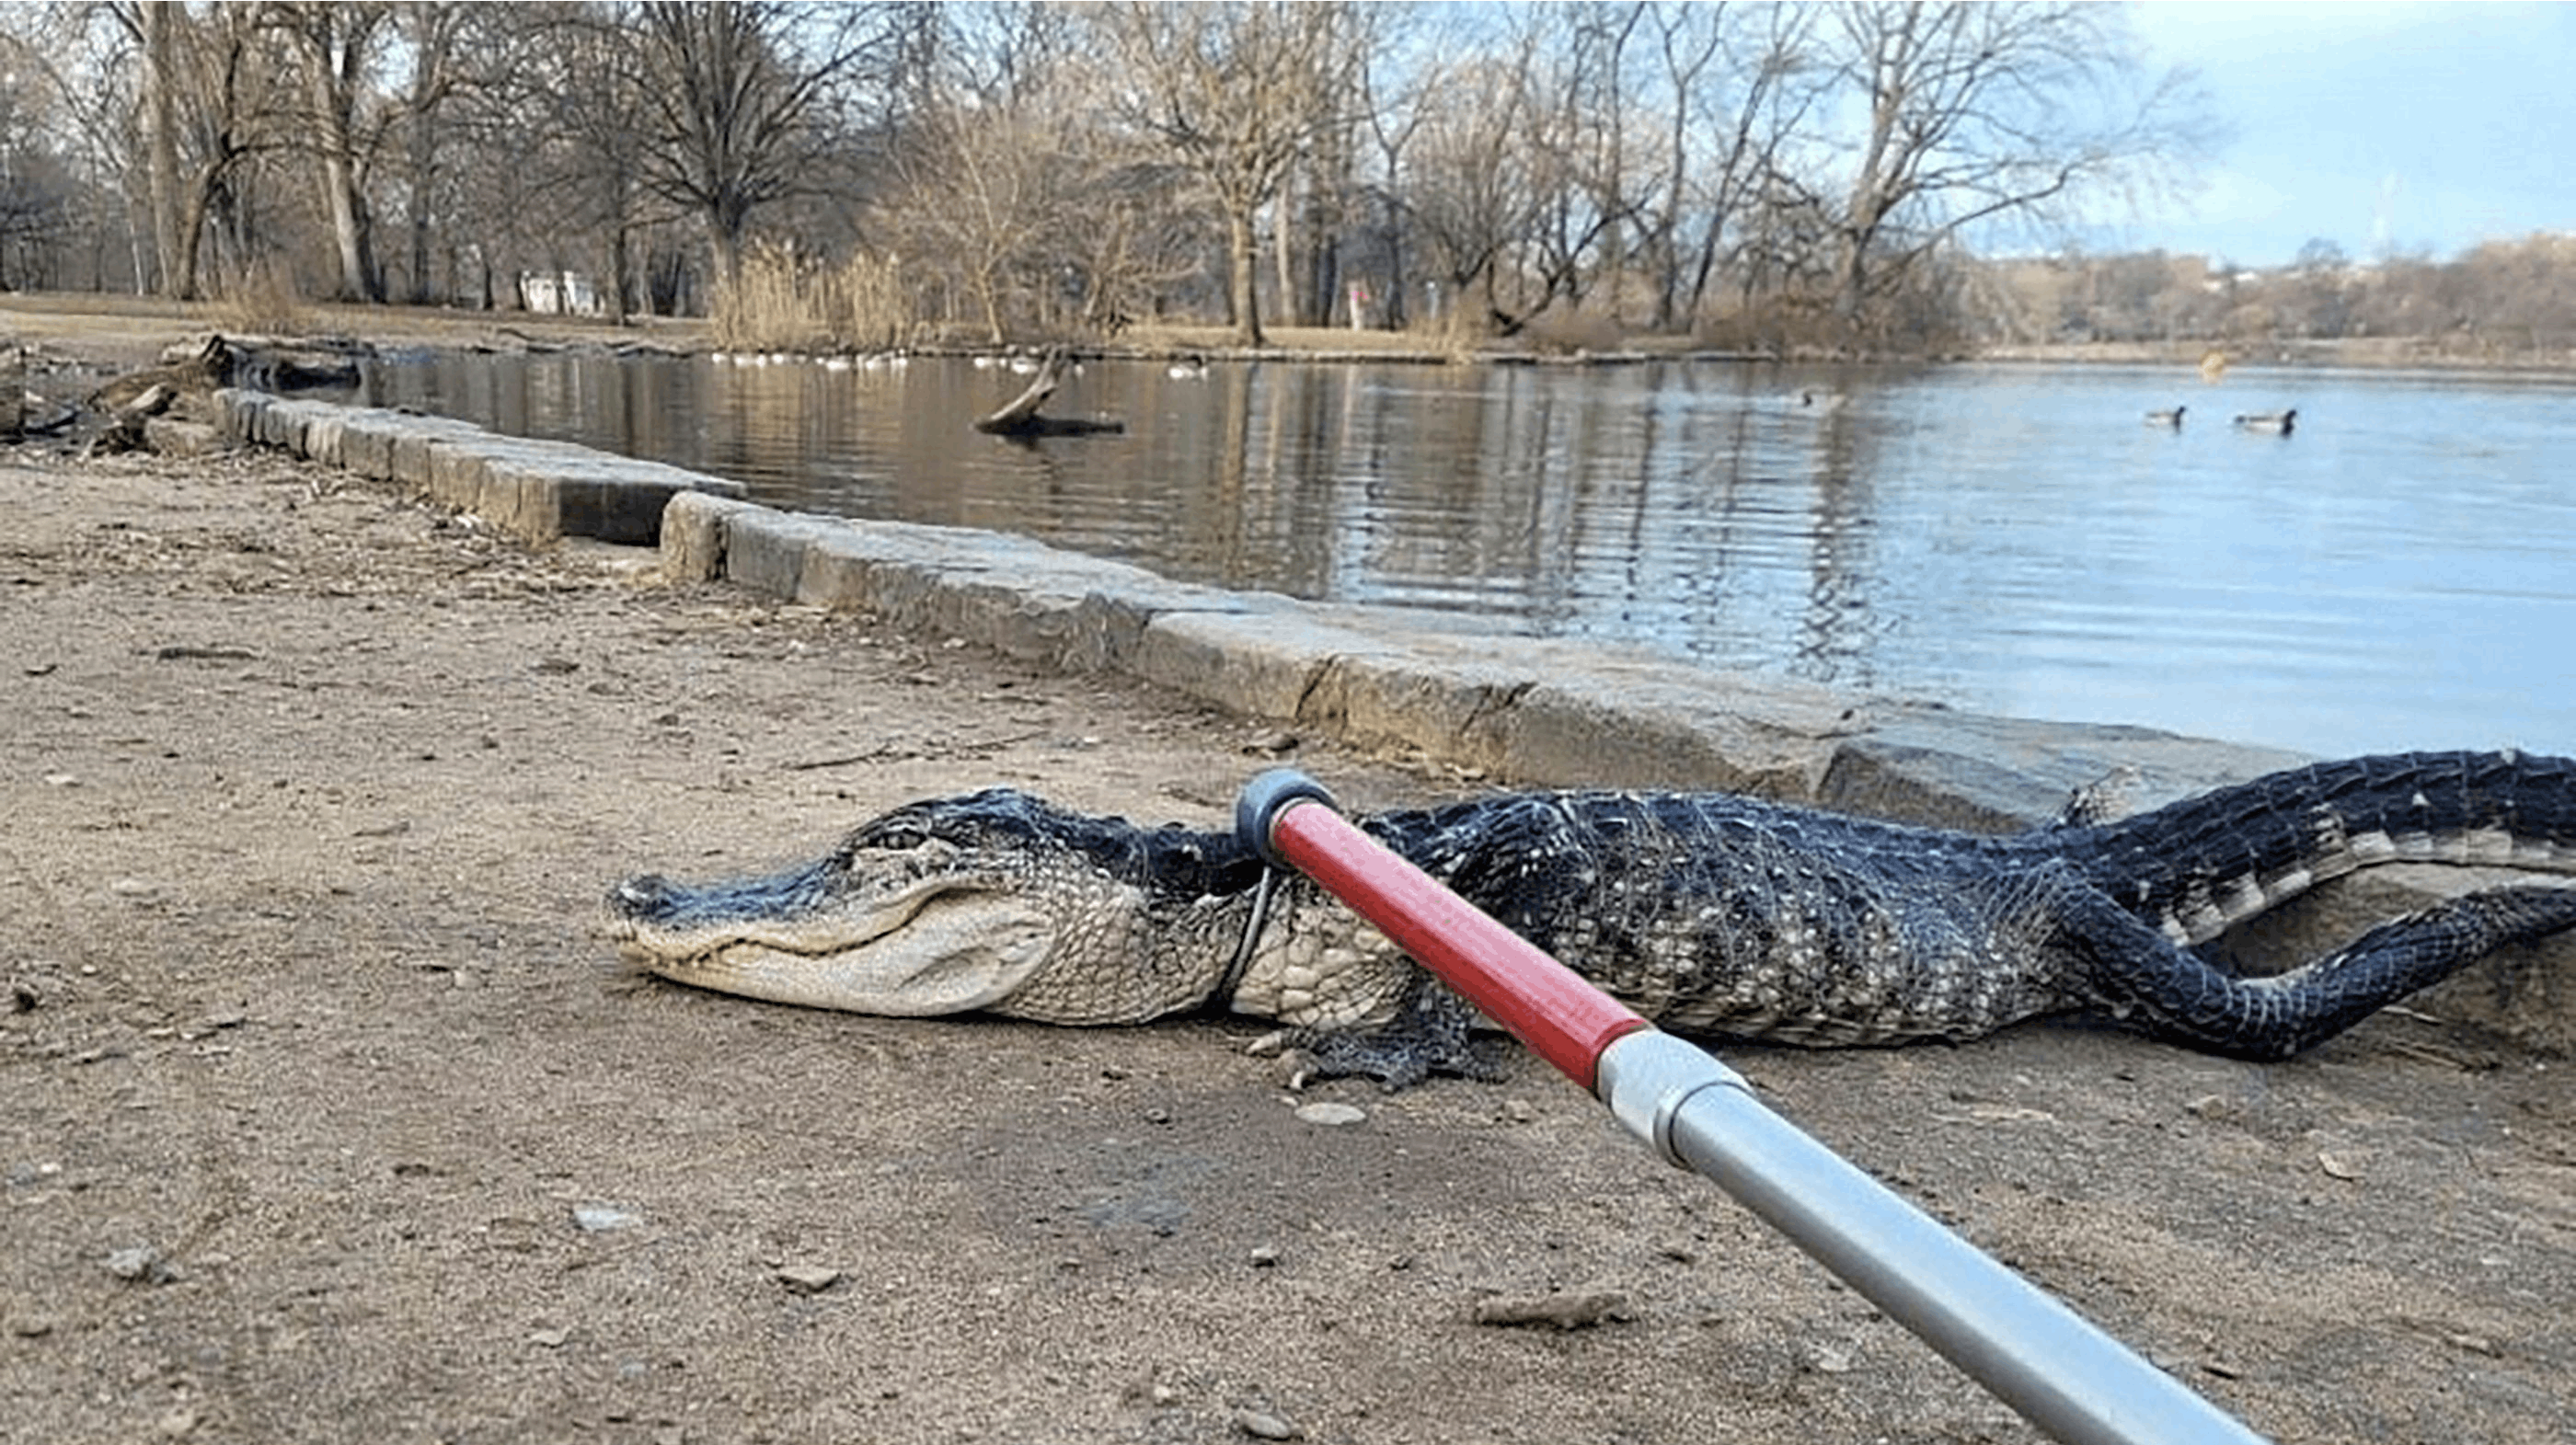 Alligatoren var kold, da den blev reddet op af søen, der ikke lige frem er dens habitat.